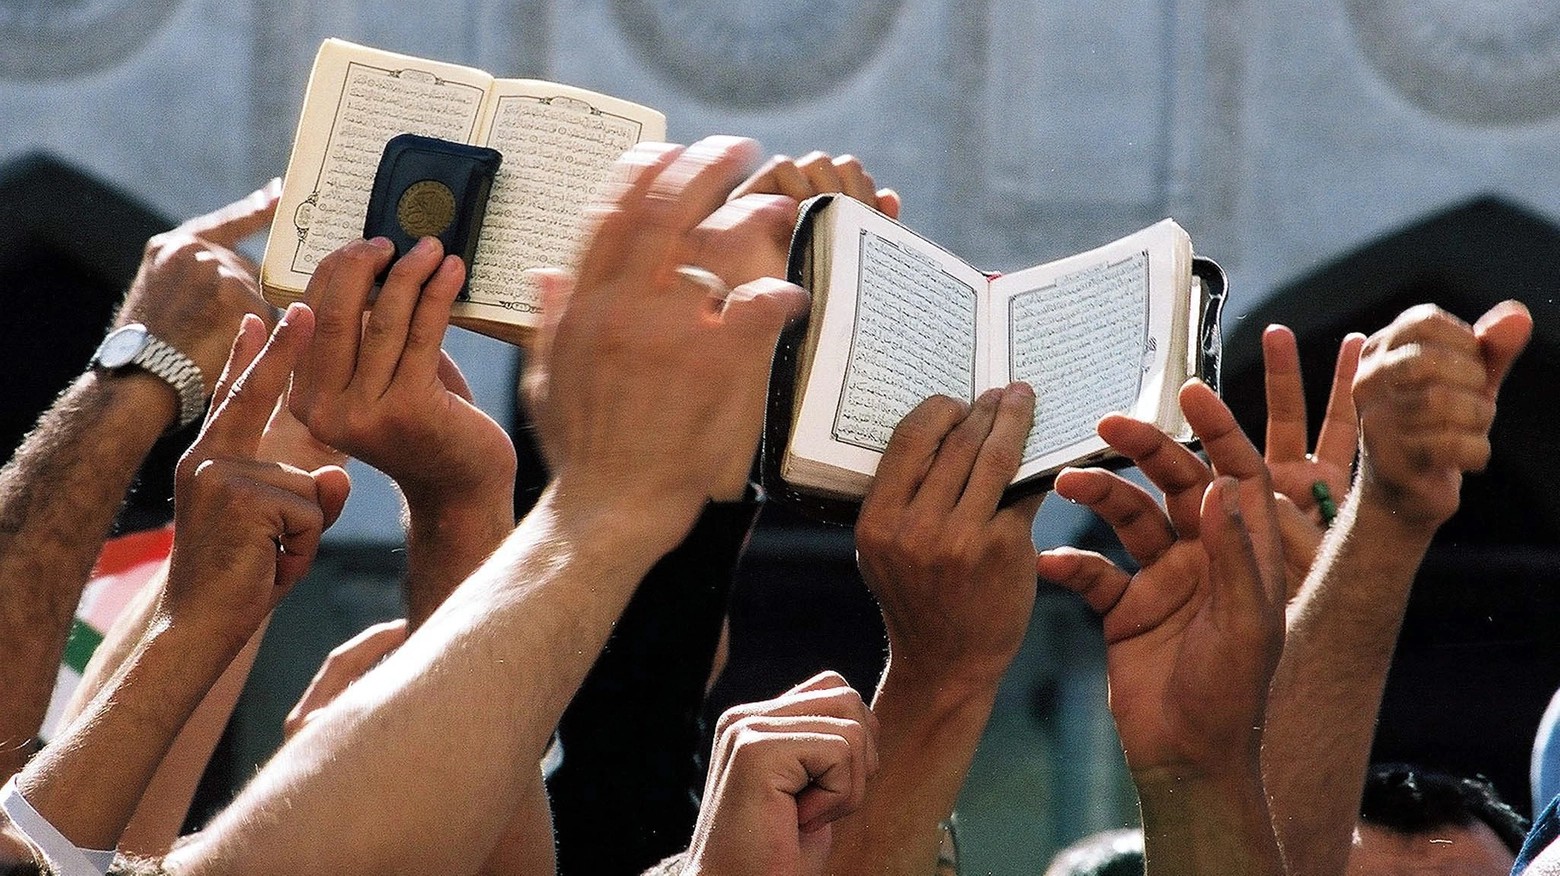 Il Corano